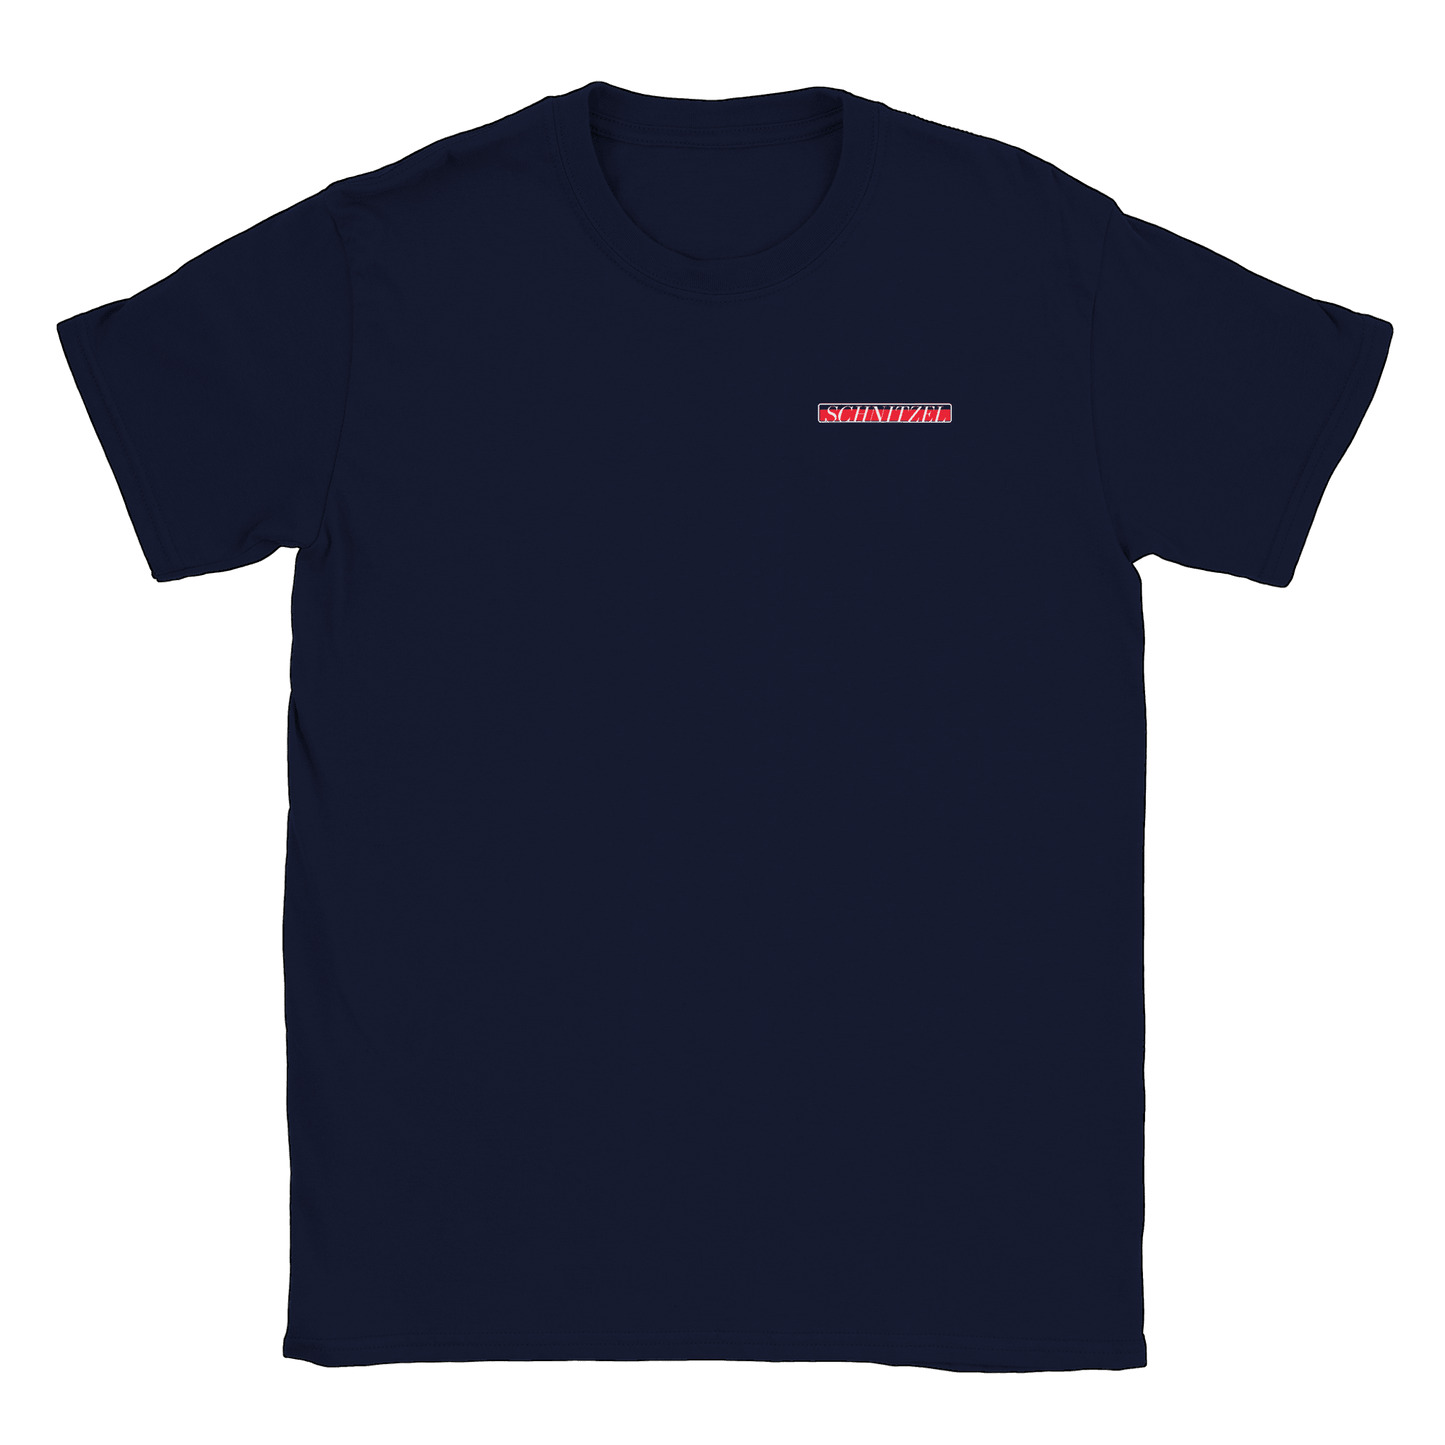 Schnitzel - T-shirt Navy